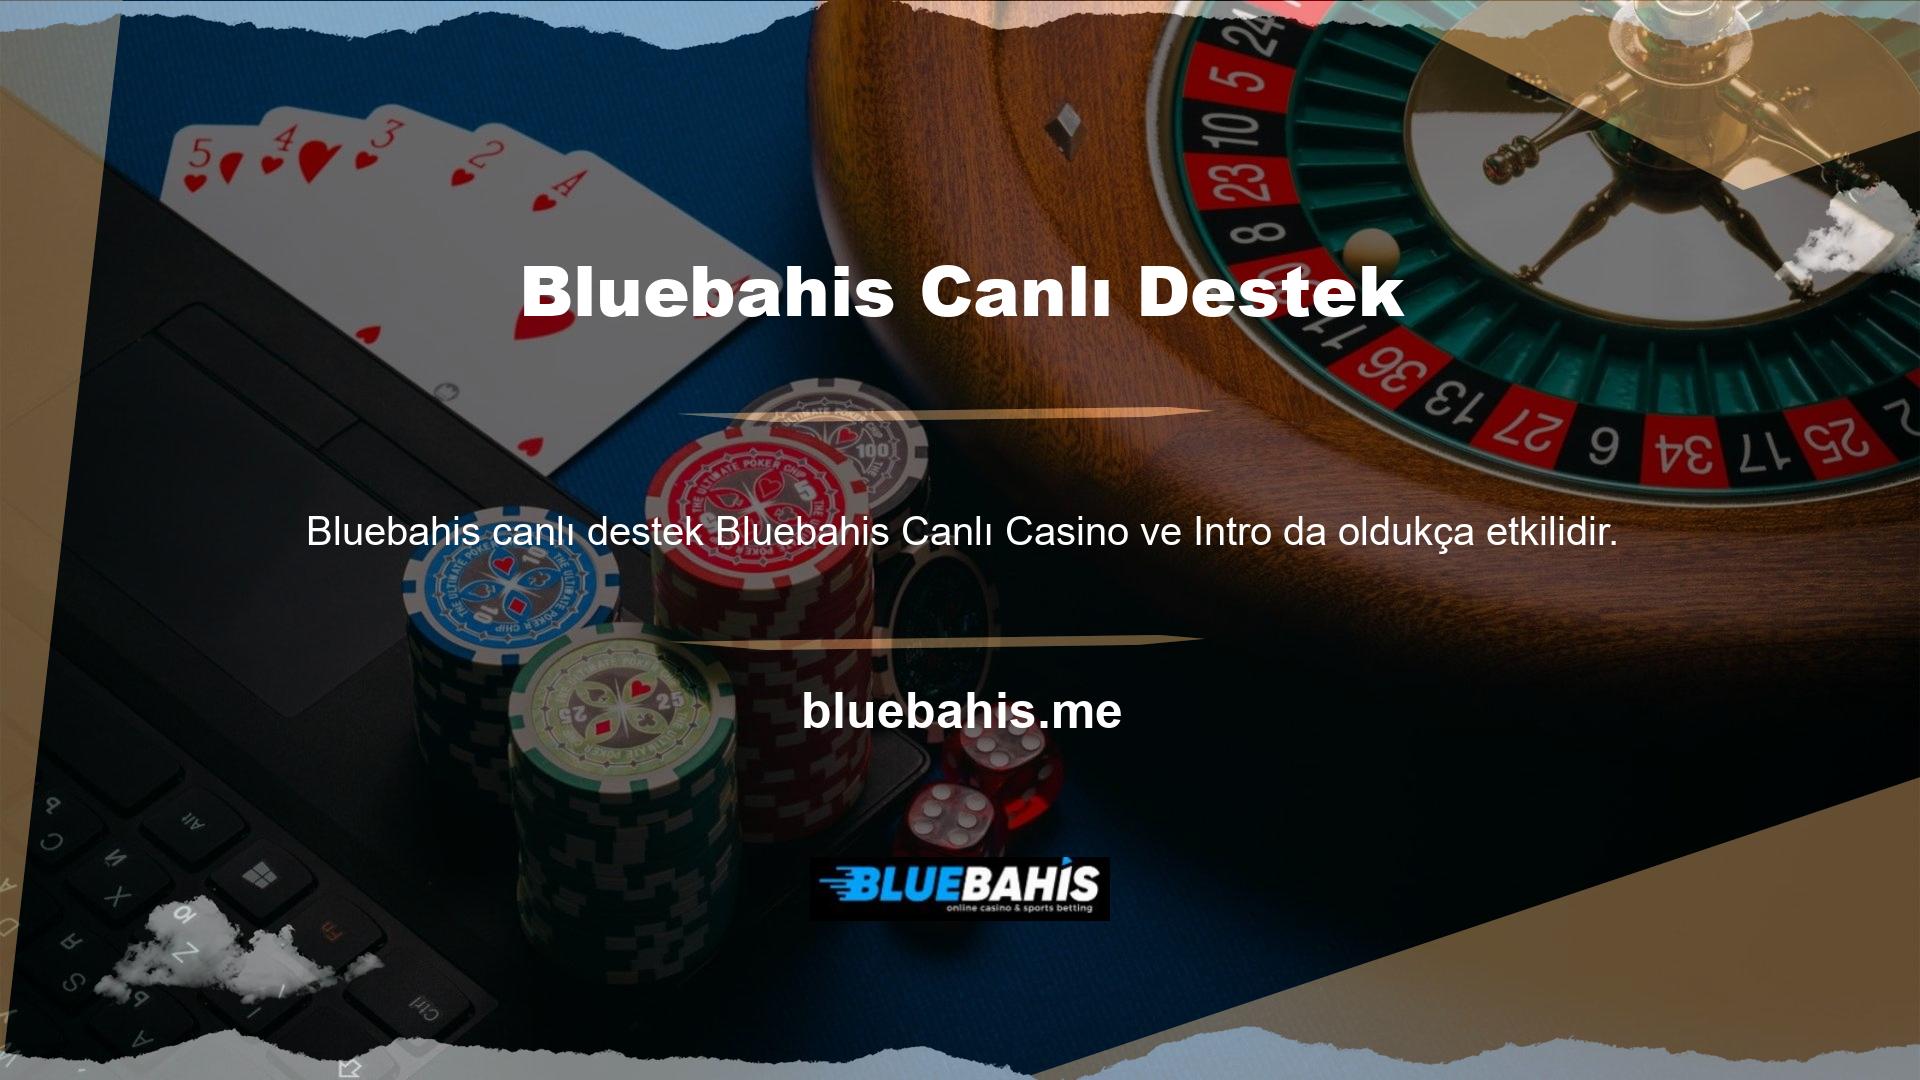 Bu bölümde sadece poker oyunları için değil aynı zamanda rulet ve blackjack gibi seçenekler için de Bluebahis Casino'ya kayıt olmak için en güncel oyunların tümüne erişebilir ve canlı desteğin keyfini çıkarabilirsiniz